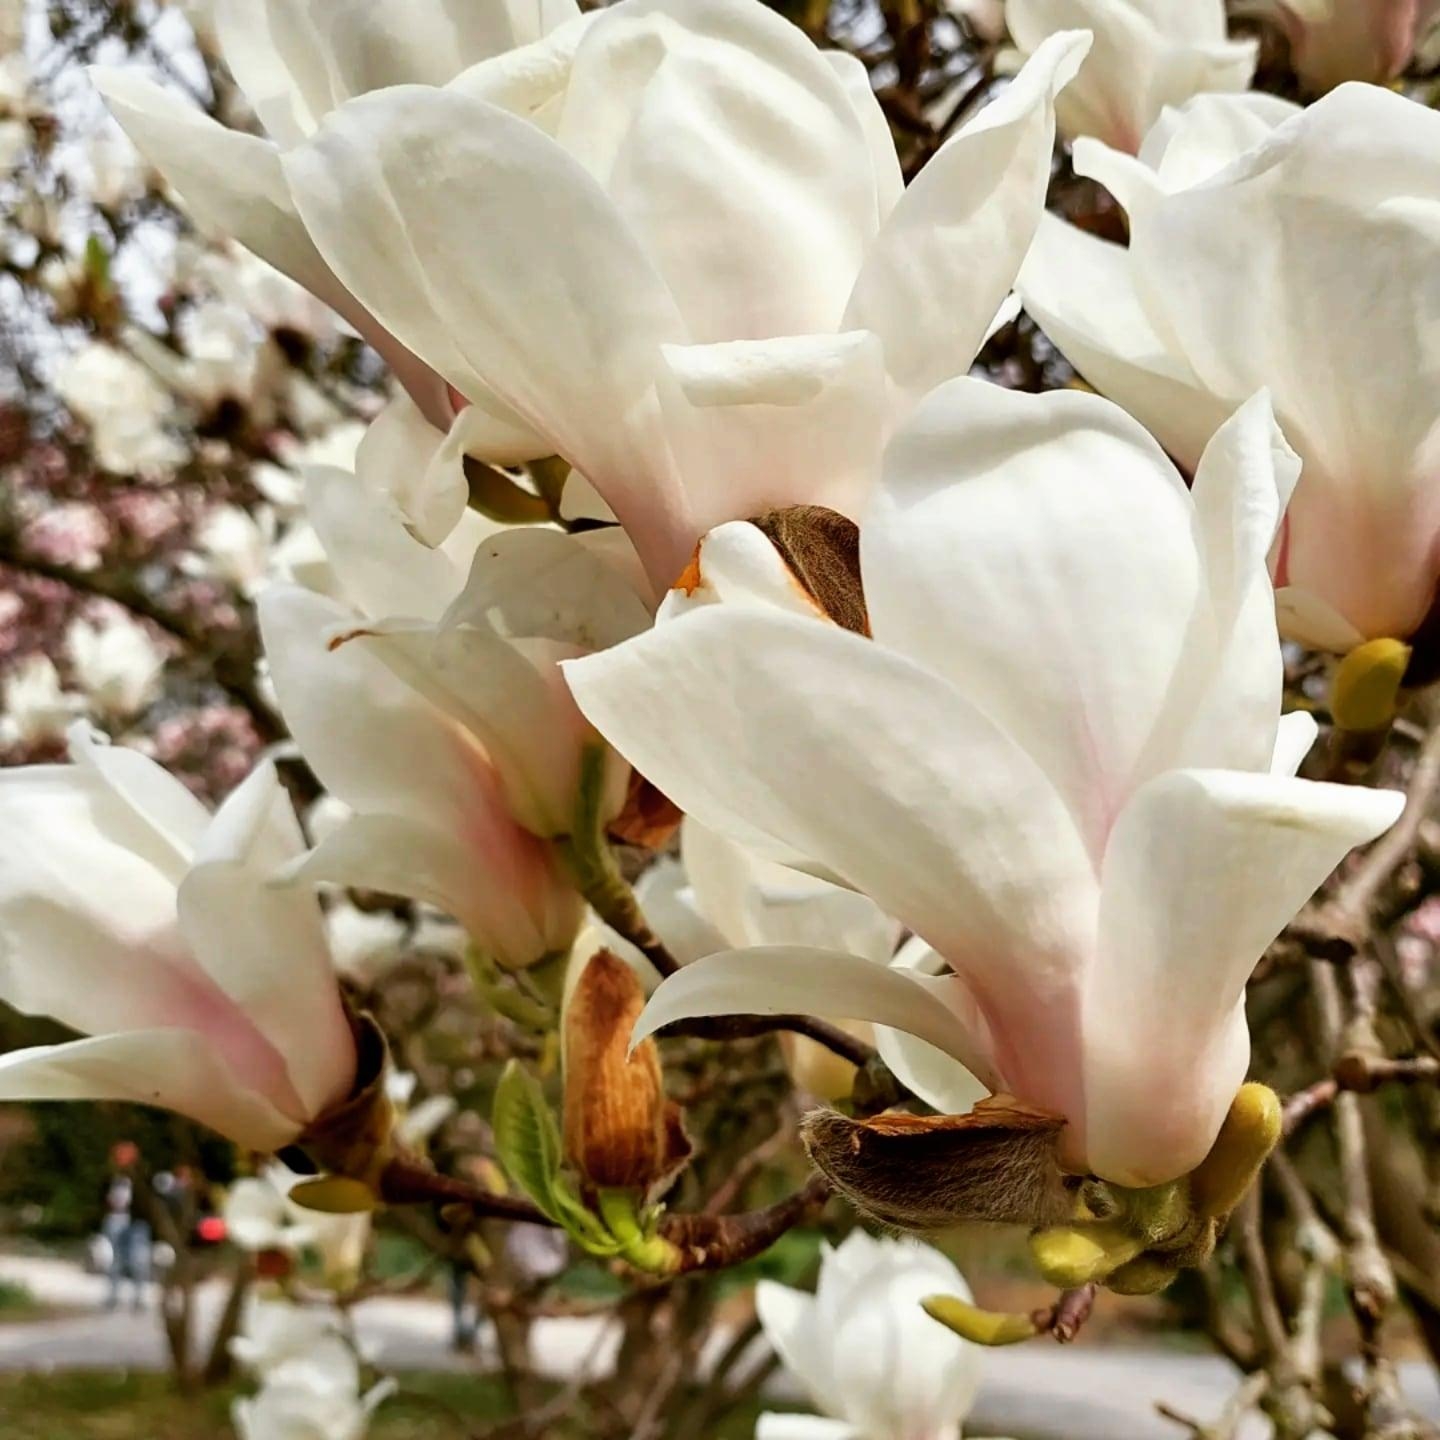 Ganz besonders weiße Magnolien 
#spring #magnolien #blüten #fotografie #weißemagnolien